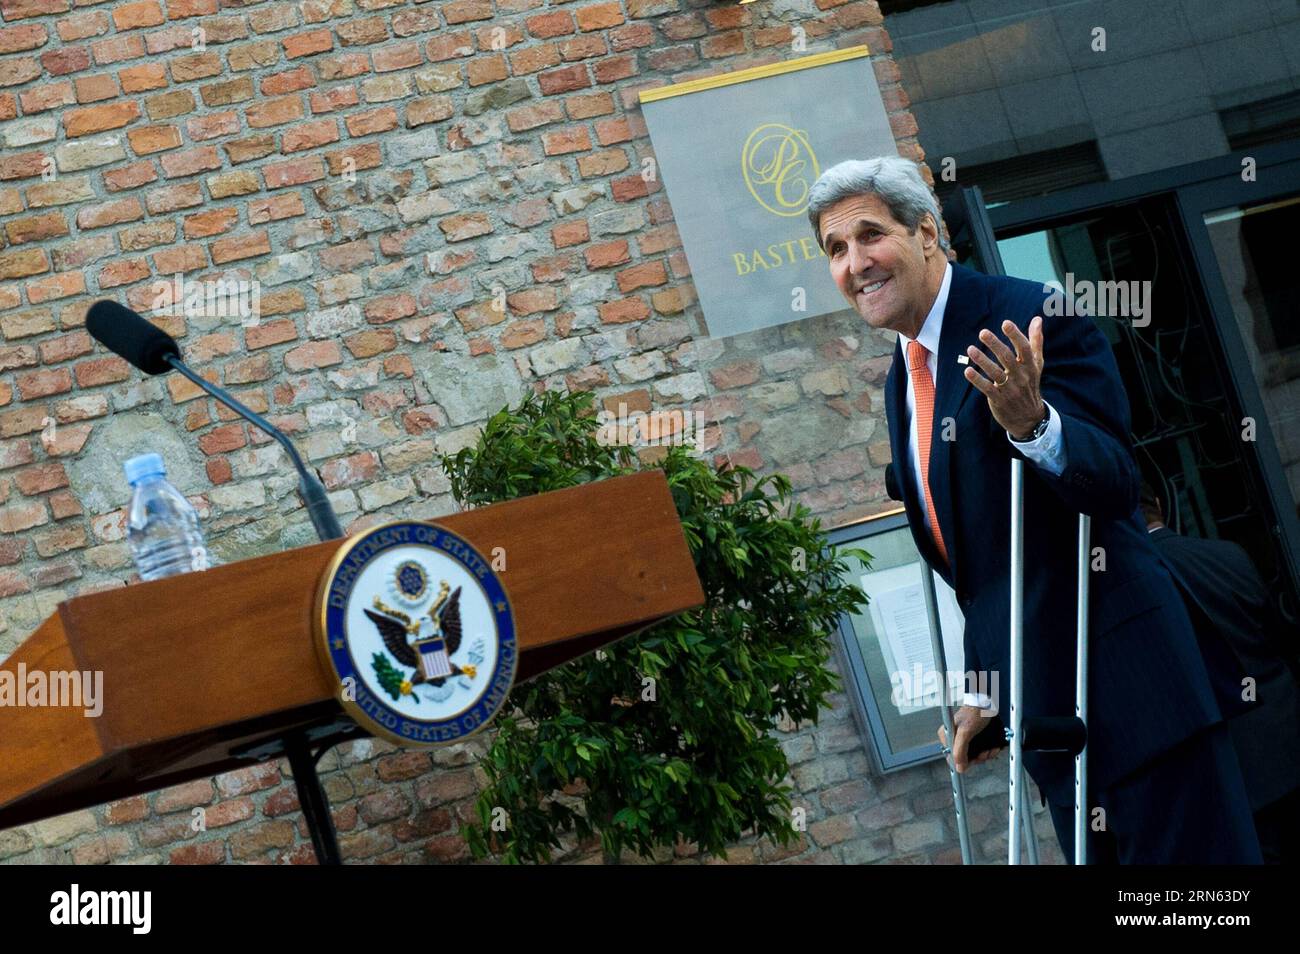 (150709) -- WIEN, 9. Juli 2015 -- US-Außenminister John Kerry reagiert vor einer Pressekonferenz vor dem Palais Coburg, wo die iranischen Atomgespräche stattfinden, in Wien, Österreich, 9. Juli 2015. John Kerry sagte am Donnerstag, dass einige der schwierigen Fragen in den laufenden Atomgesprächen hier noch ungelöst seien und dass sehr bald harte Entscheidungen getroffen werden müssten. ) ÖSTERREICH-WIEN-IRAN NUKLEARGESPRÄCHE-JOHN KERRY QianxYi PUBLICATIONxNOTxINxCHN 150709 Wien 9. Juli 2015 US-Außenminister John Kerry reagiert vor einer Pressekonferenz vor Palais Coburg, auf der die iranischen Nukleargespräche stattfinden Stockfoto